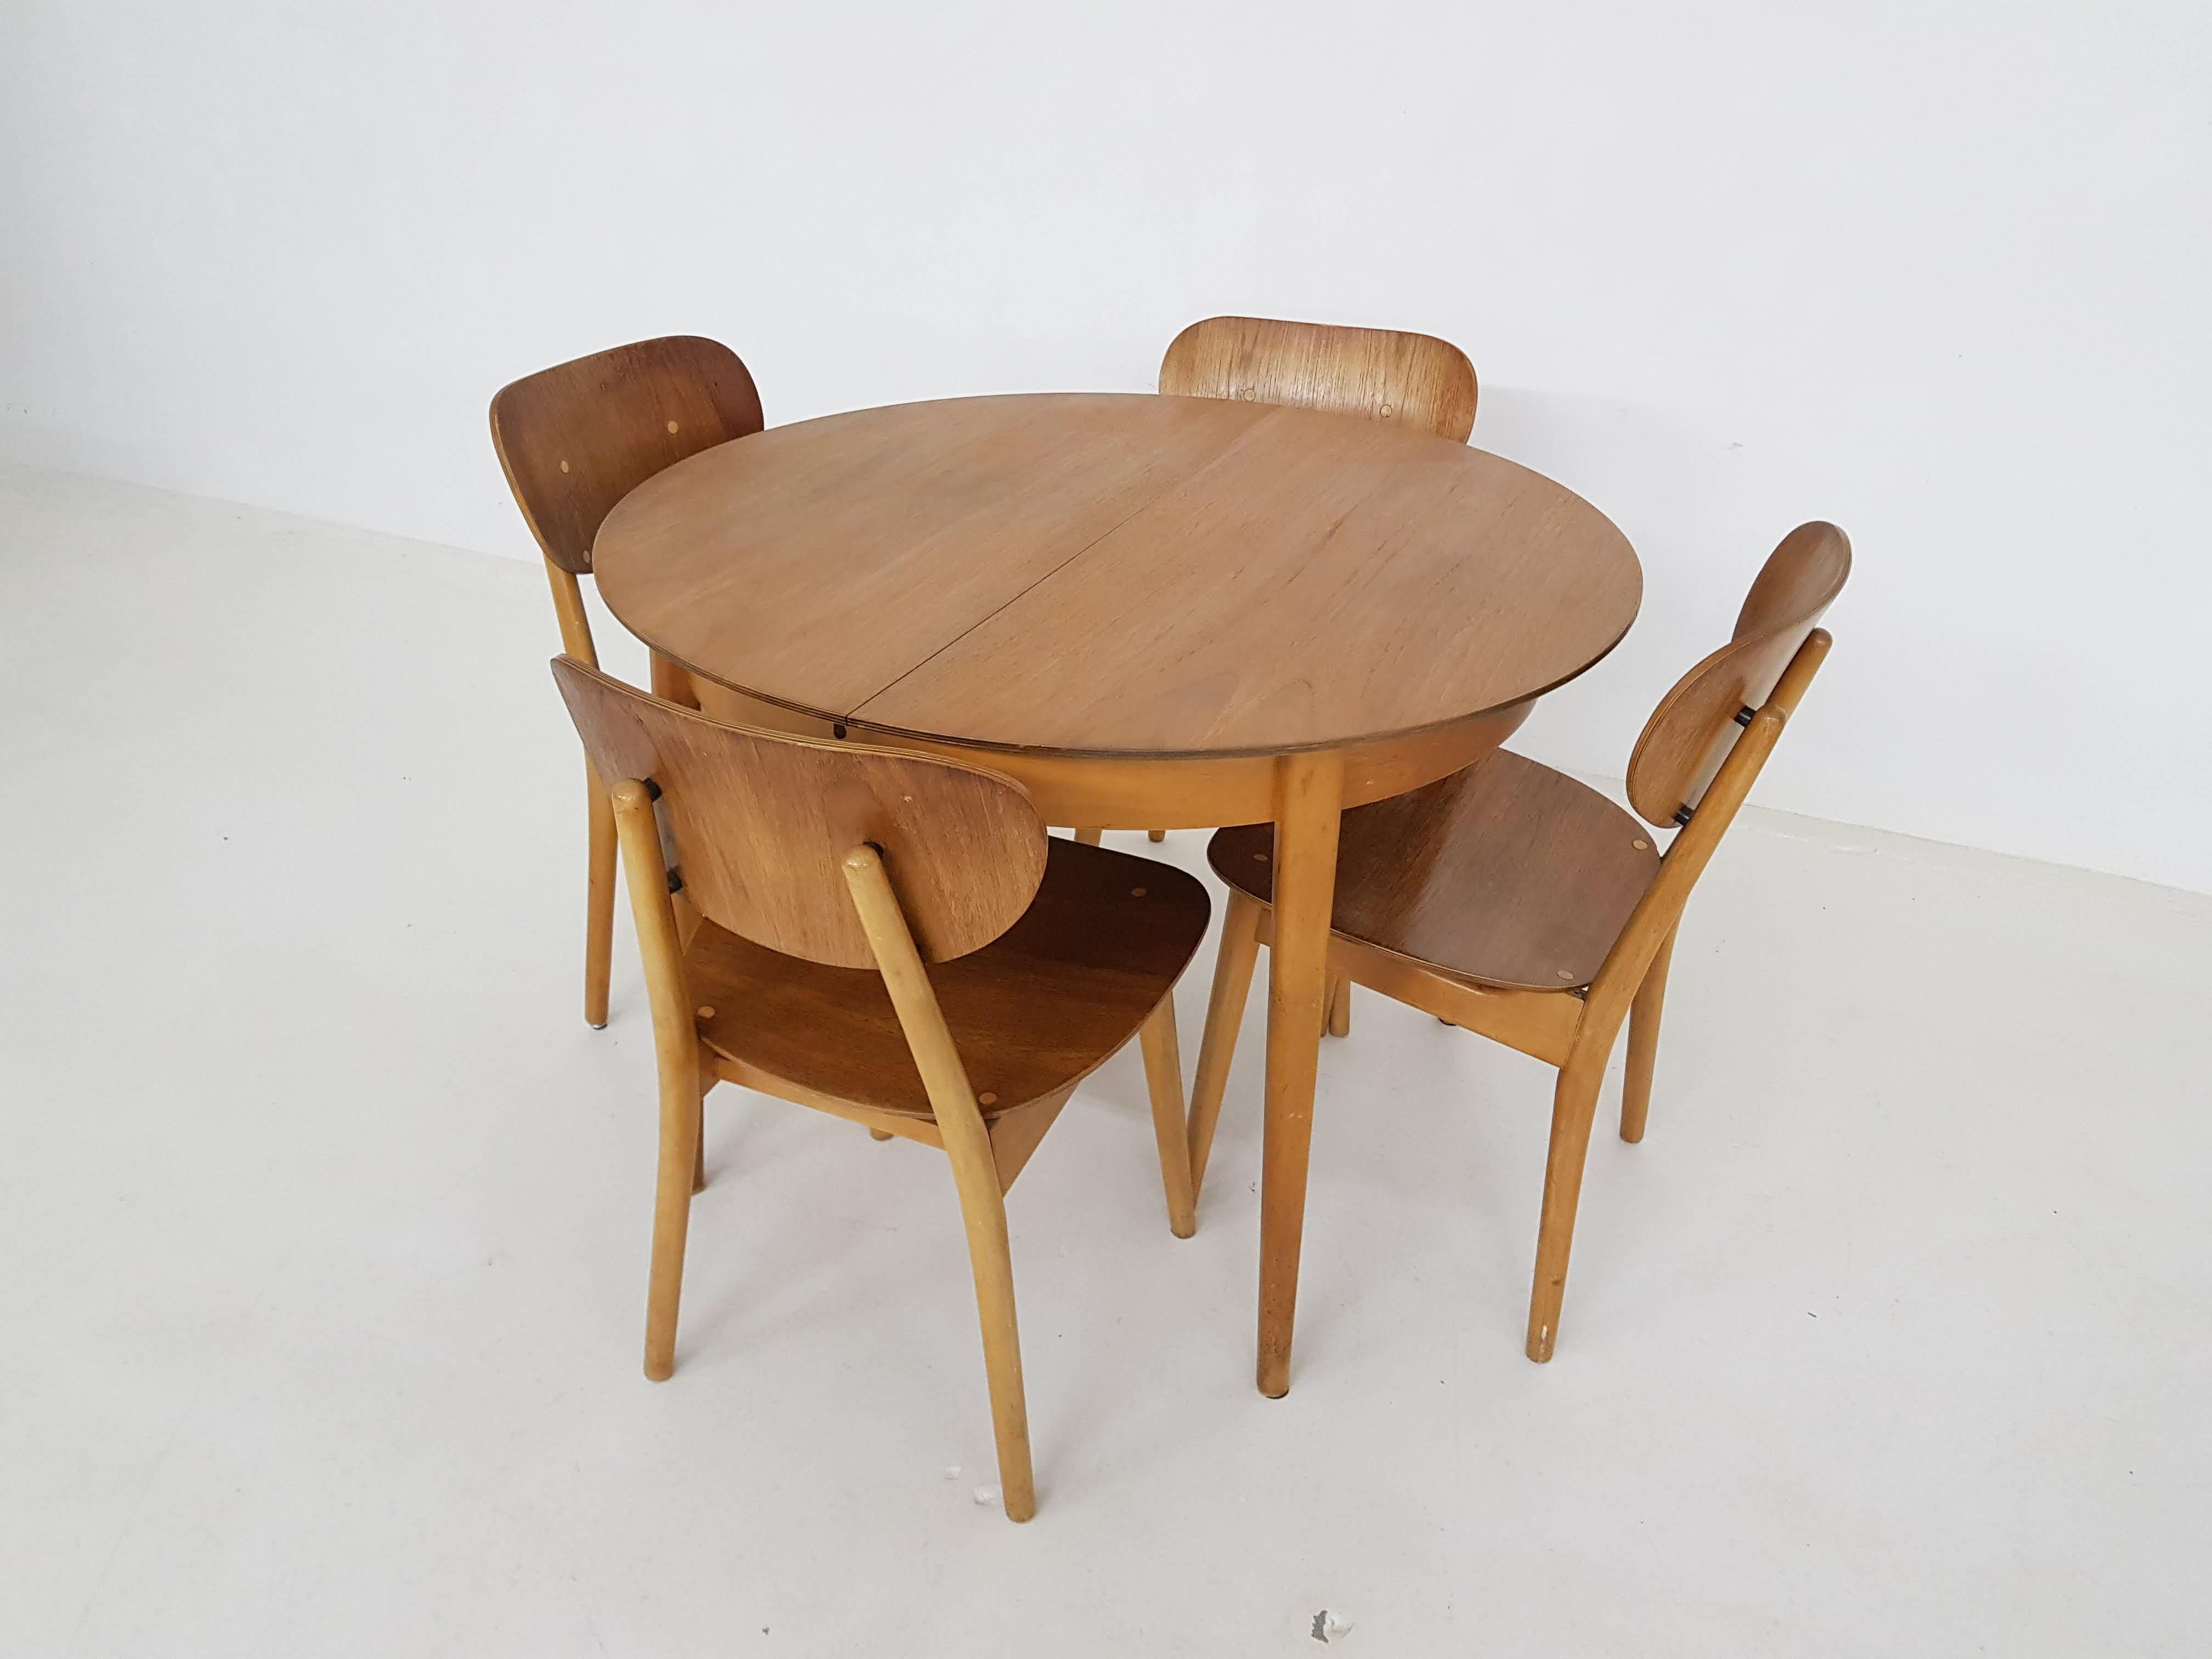 Passende Essgarnitur bestehend aus einem Tisch TB35 und Stühlen SB11 des niederländischen Designers Cees Braakman für UMS Pastoe.

Cees Braakman war ein niederländischer Möbeldesigner, der in der Mitte des Jahrhunderts für UMS Pastoe arbeitete. Er